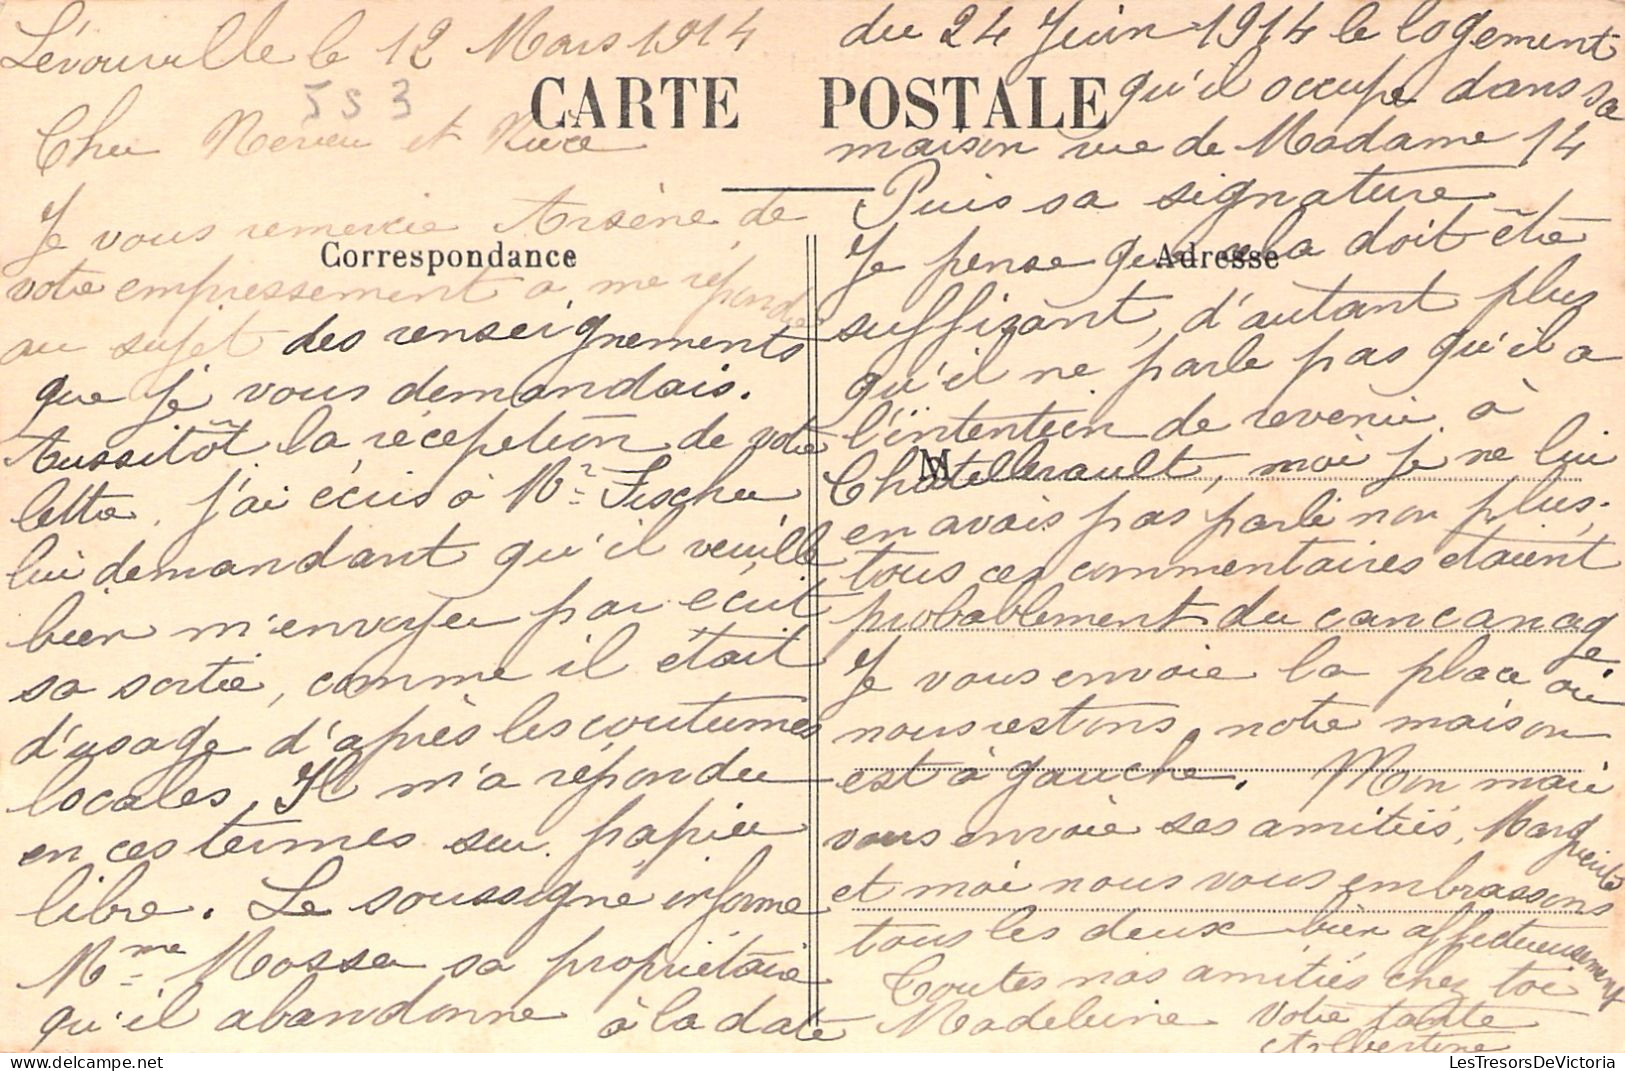 FRANCE - Lerouville - Hotel De Ville Et écoles - Carte Postale Ancienne - - Lerouville